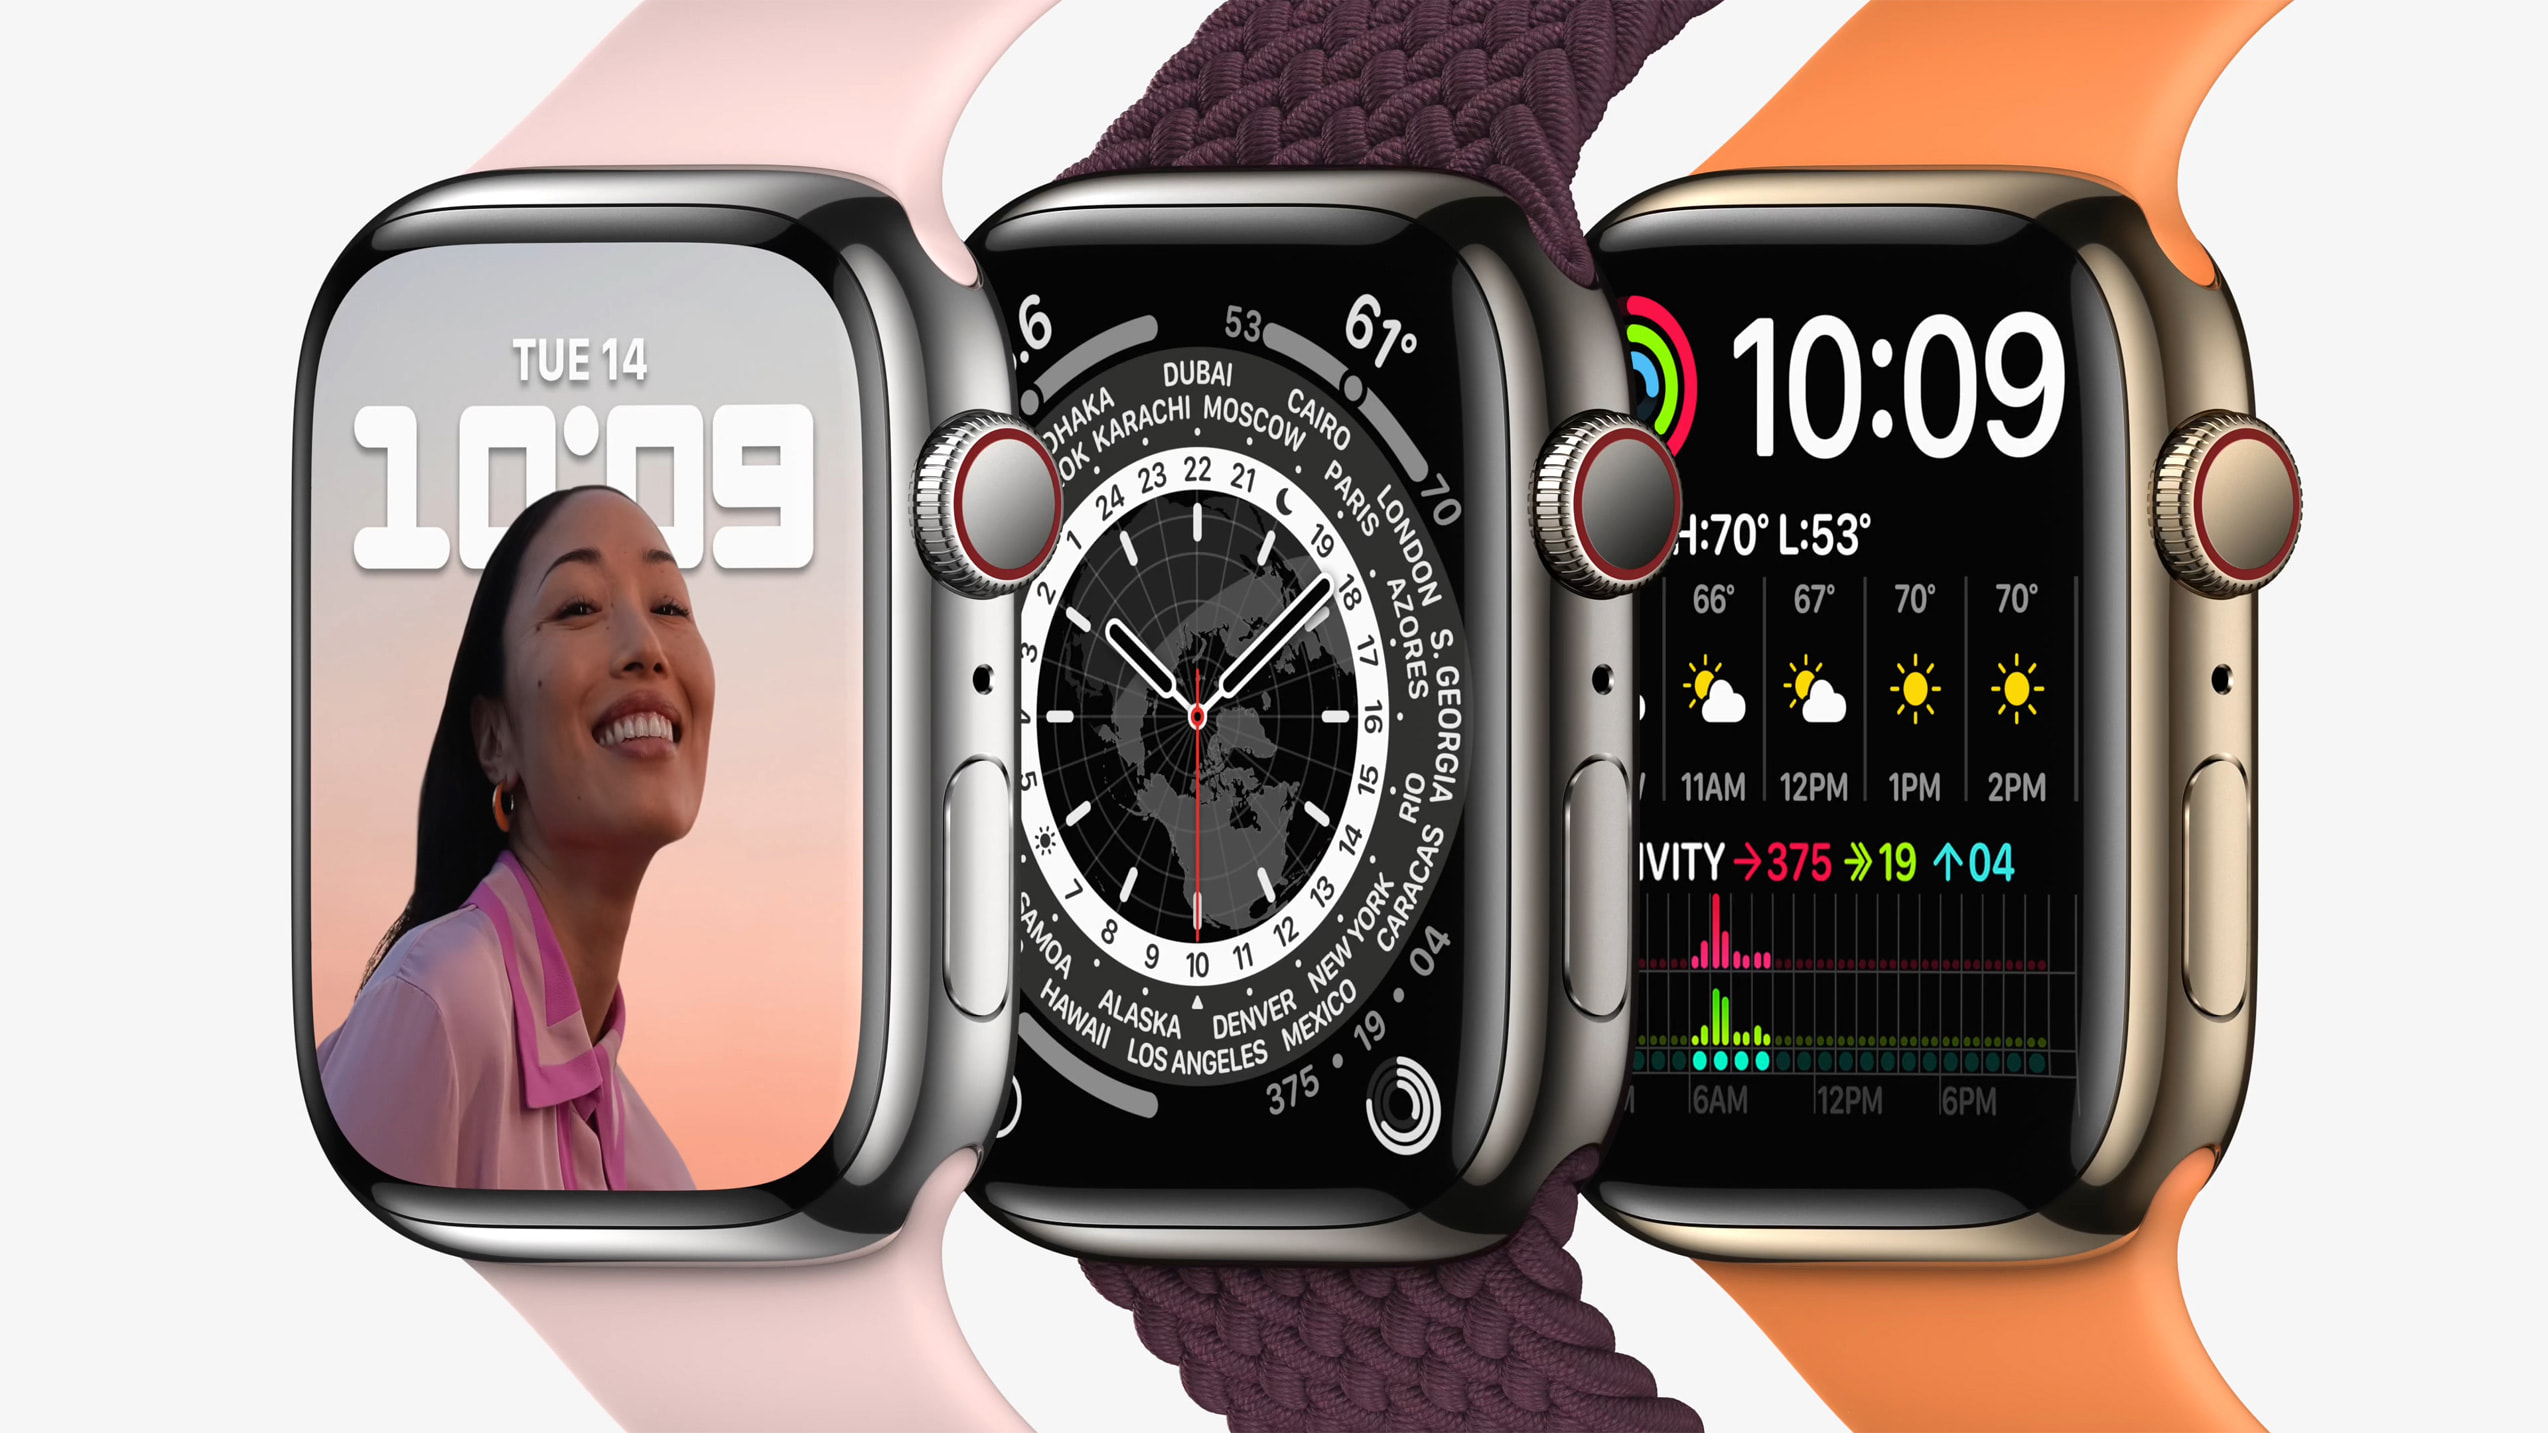 Bloomberg : La fonction de mesure de la glycémie n'apparaîtra pas sur l'Apple Watch avant 3 à 7 ans